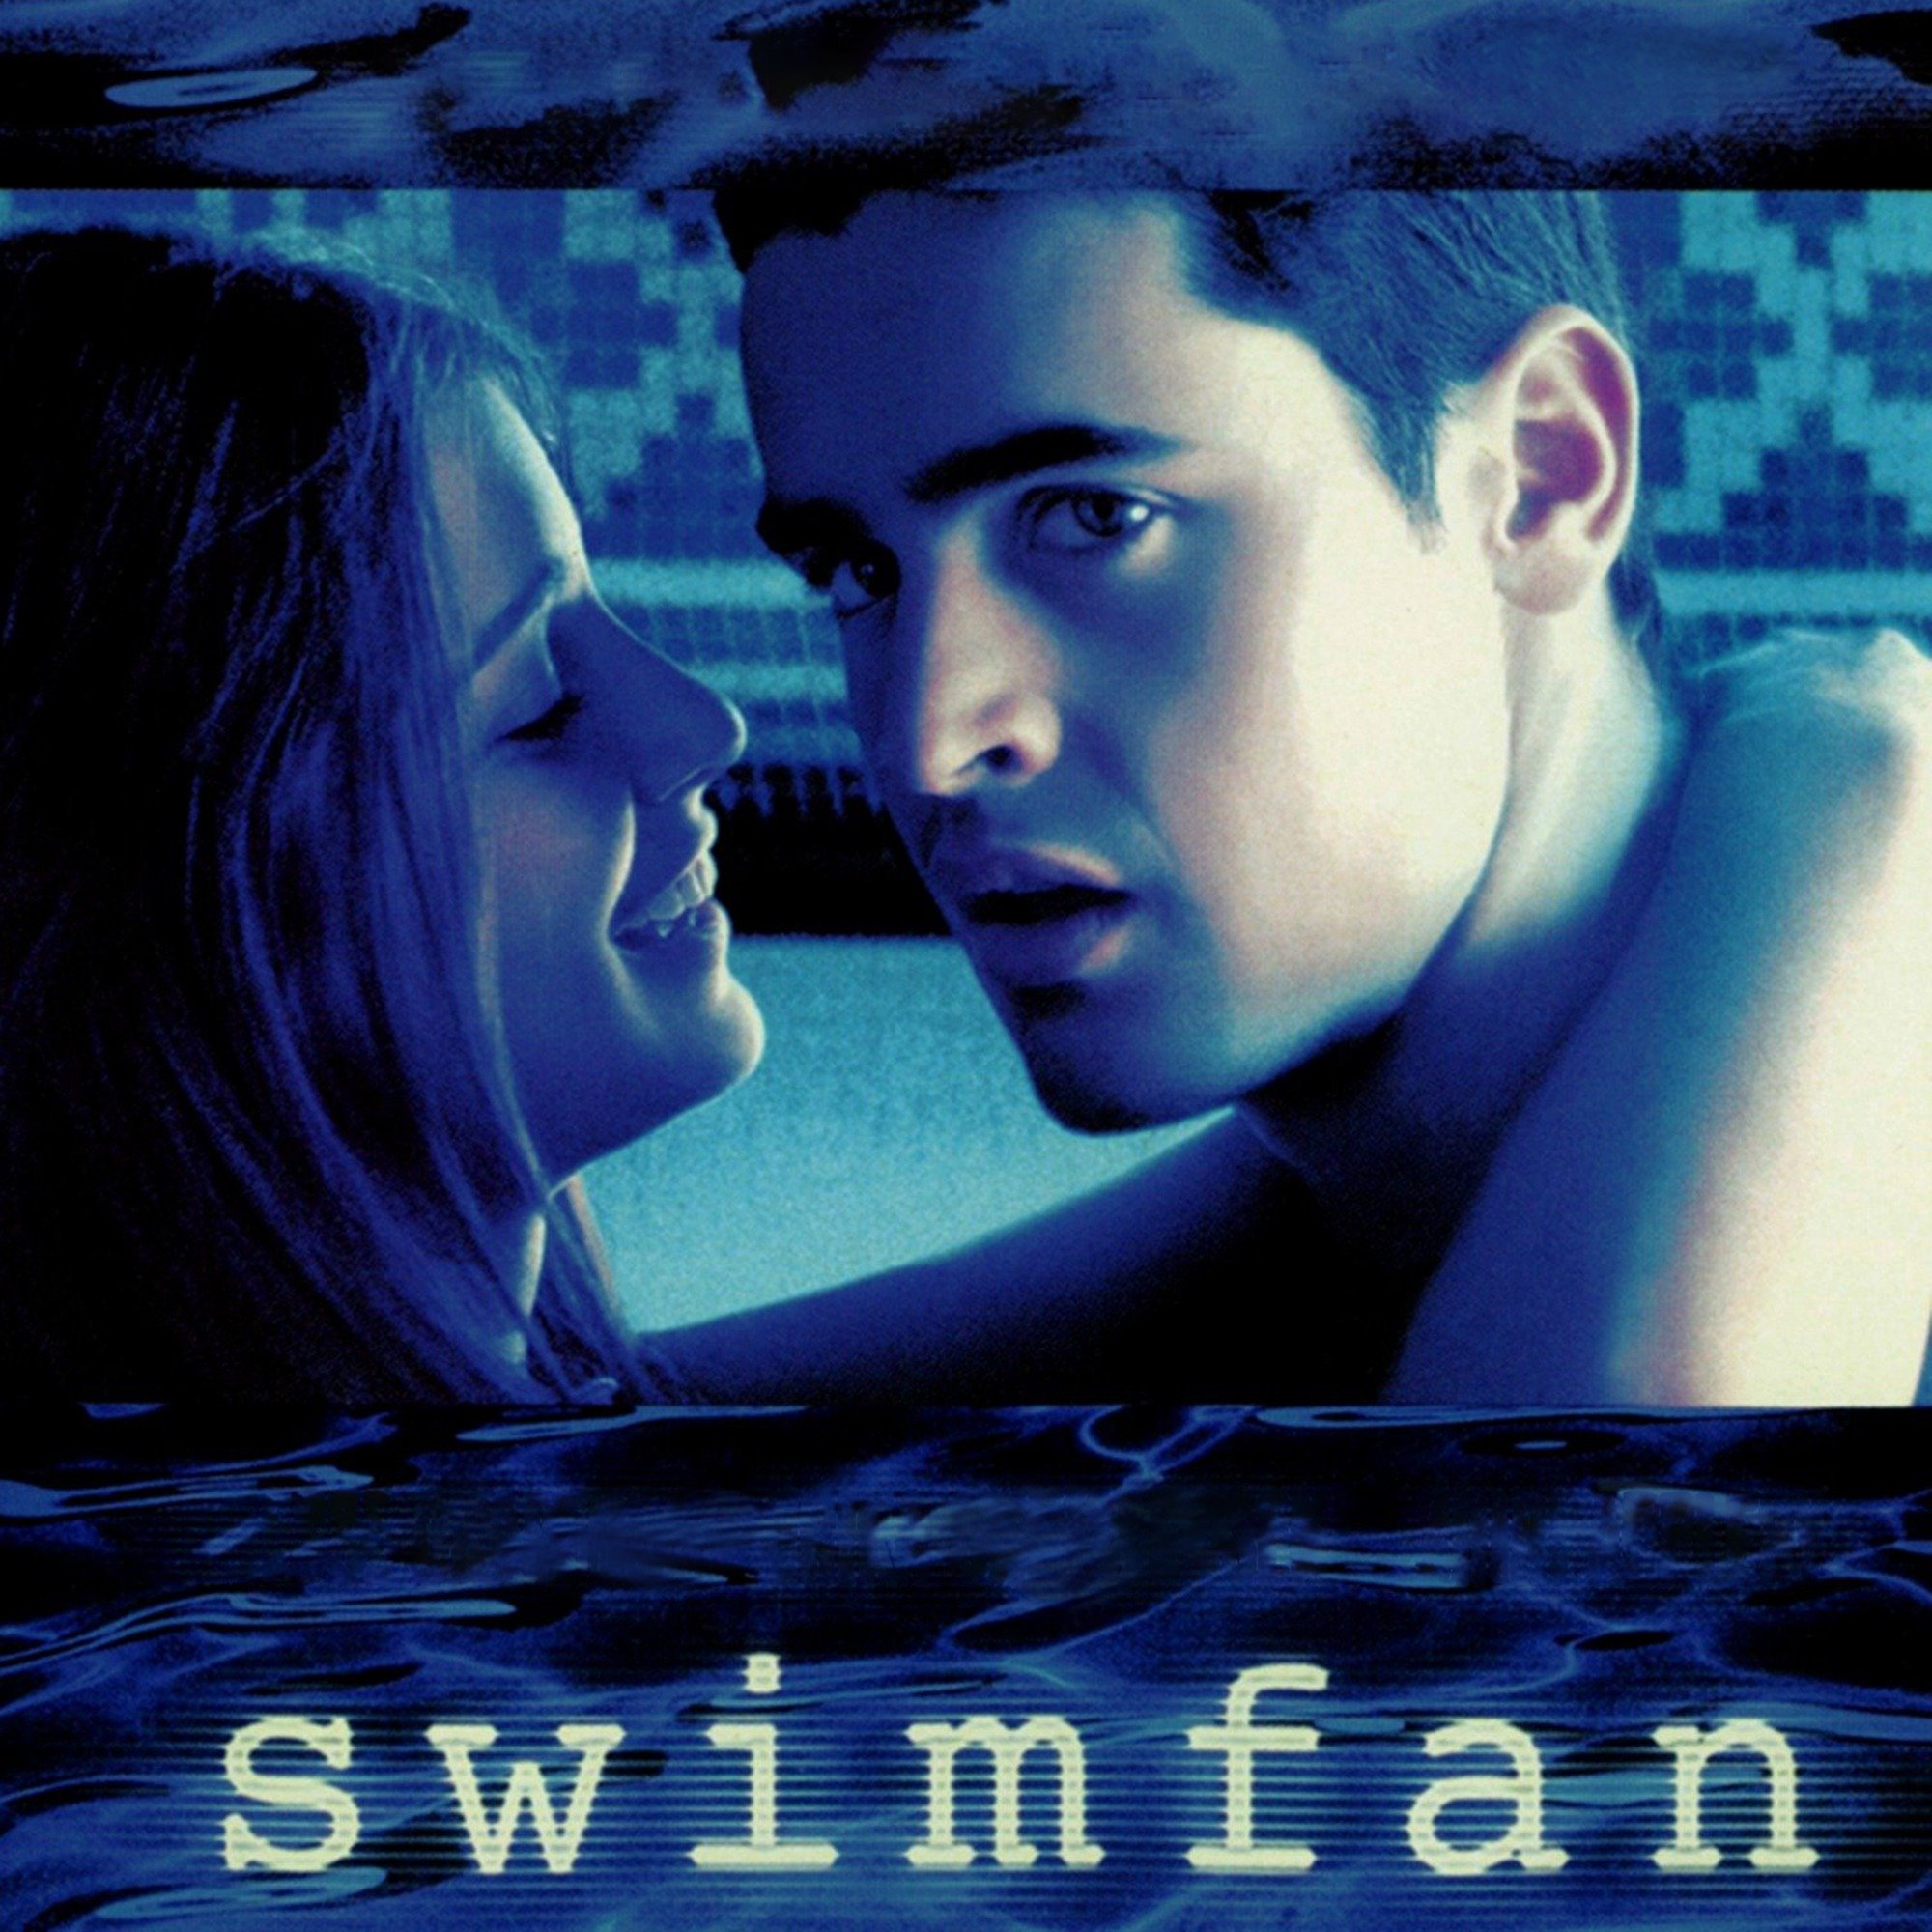 cardboard paul recommends Swimfan Full Movie Online